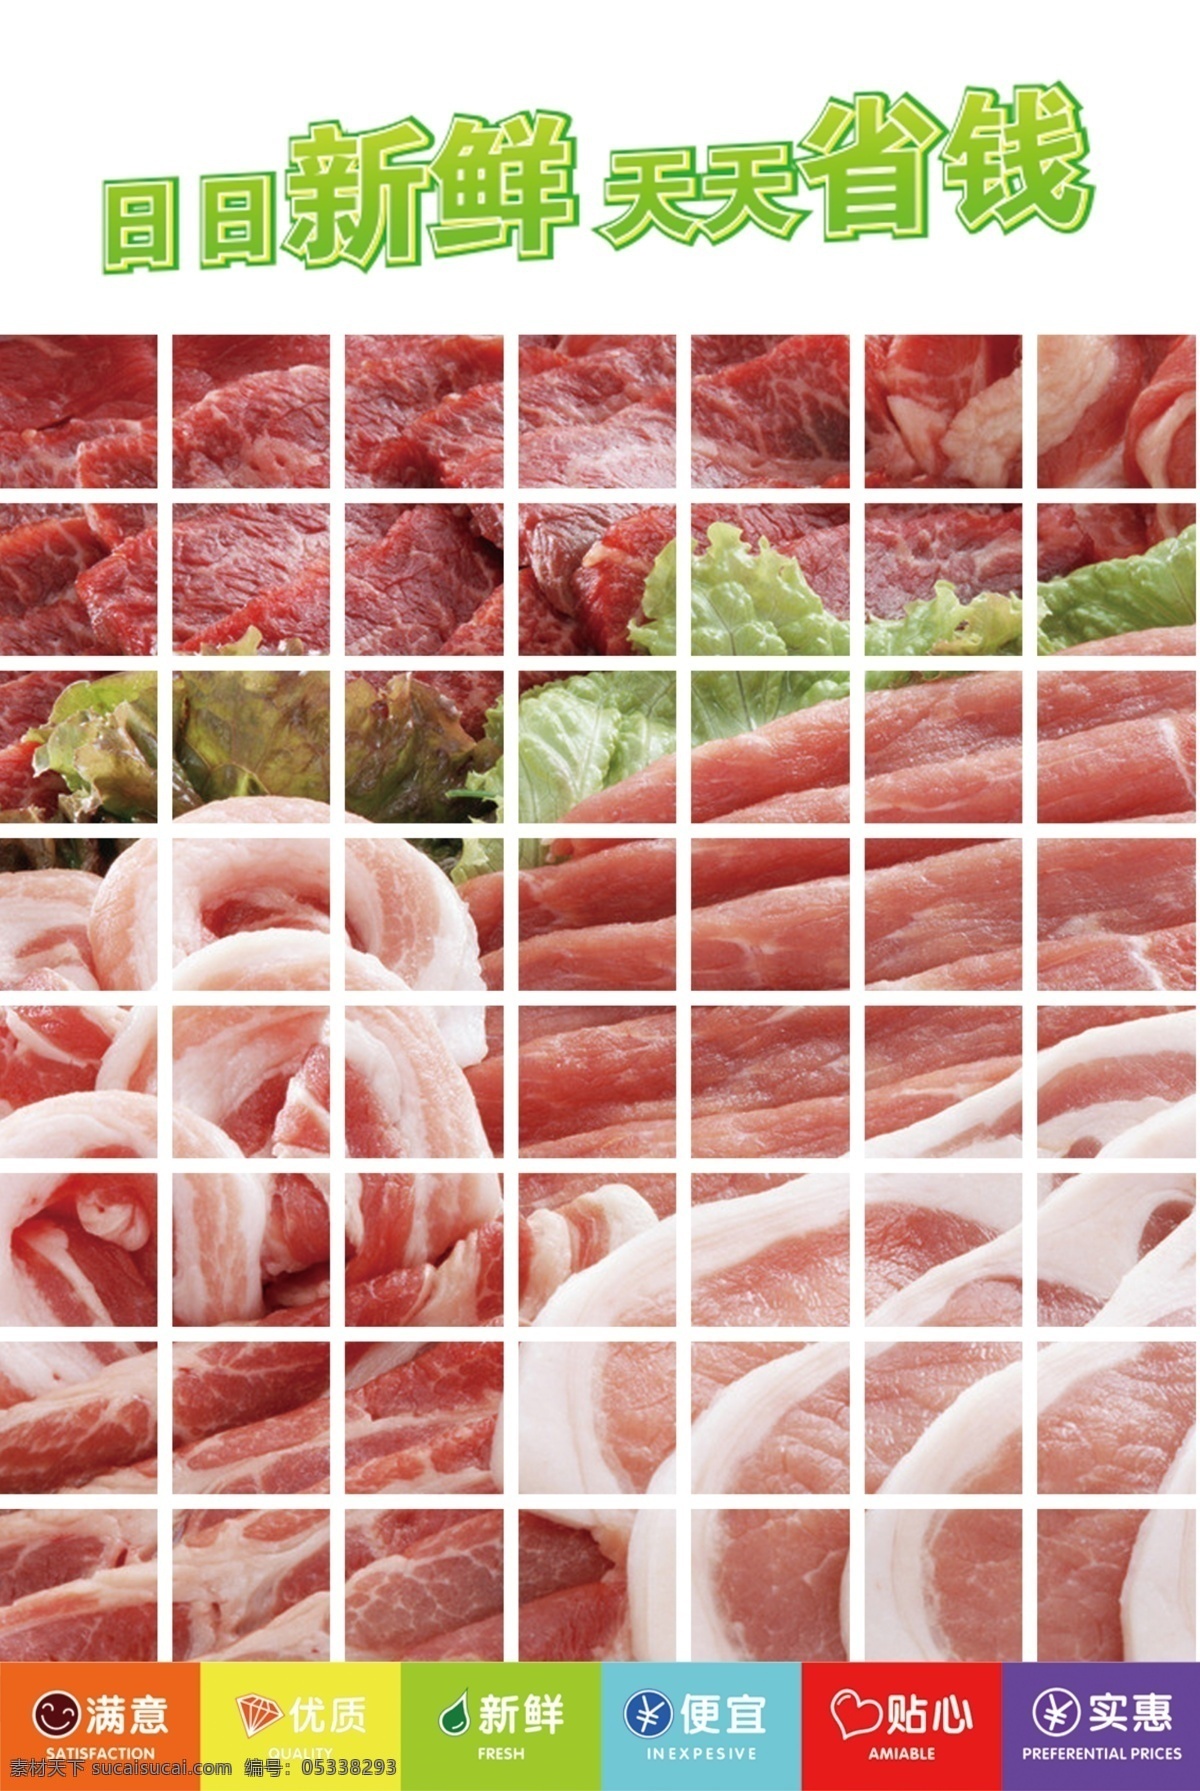 猪肉 生肉 海报 日日新鲜 天天省钱 满意 优质 便宜 贴心 实惠 广告设计模板 源文件